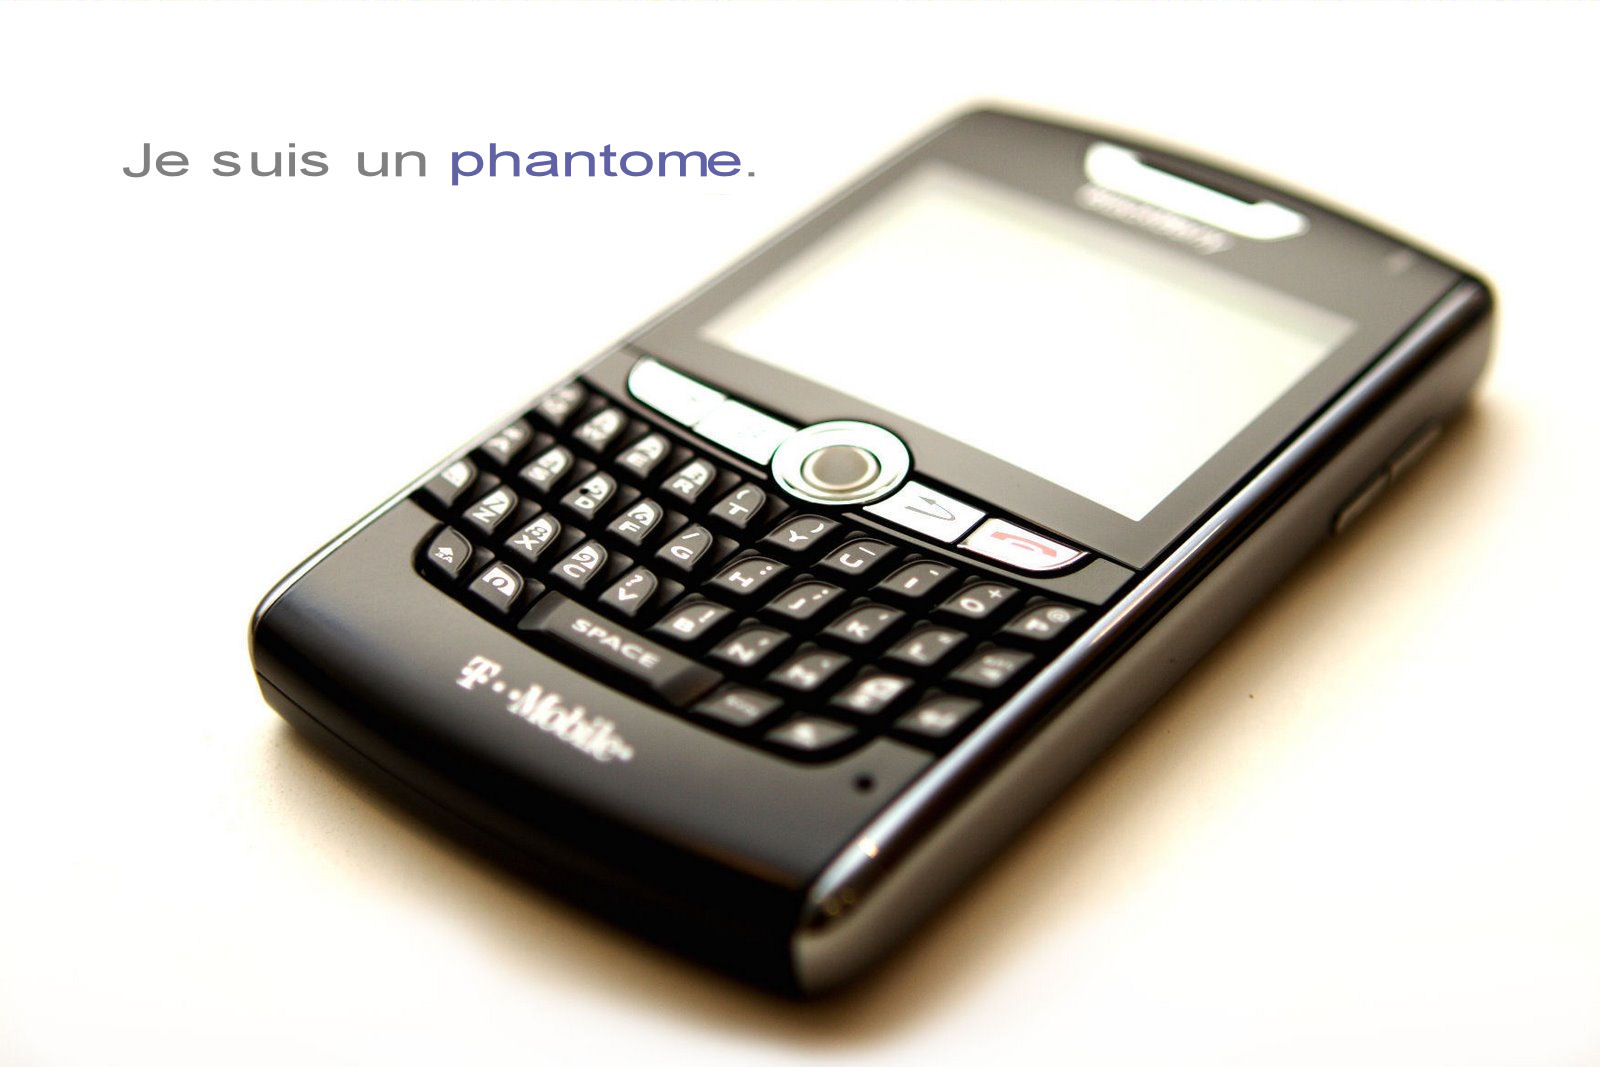 [blackberry4004.jpg]